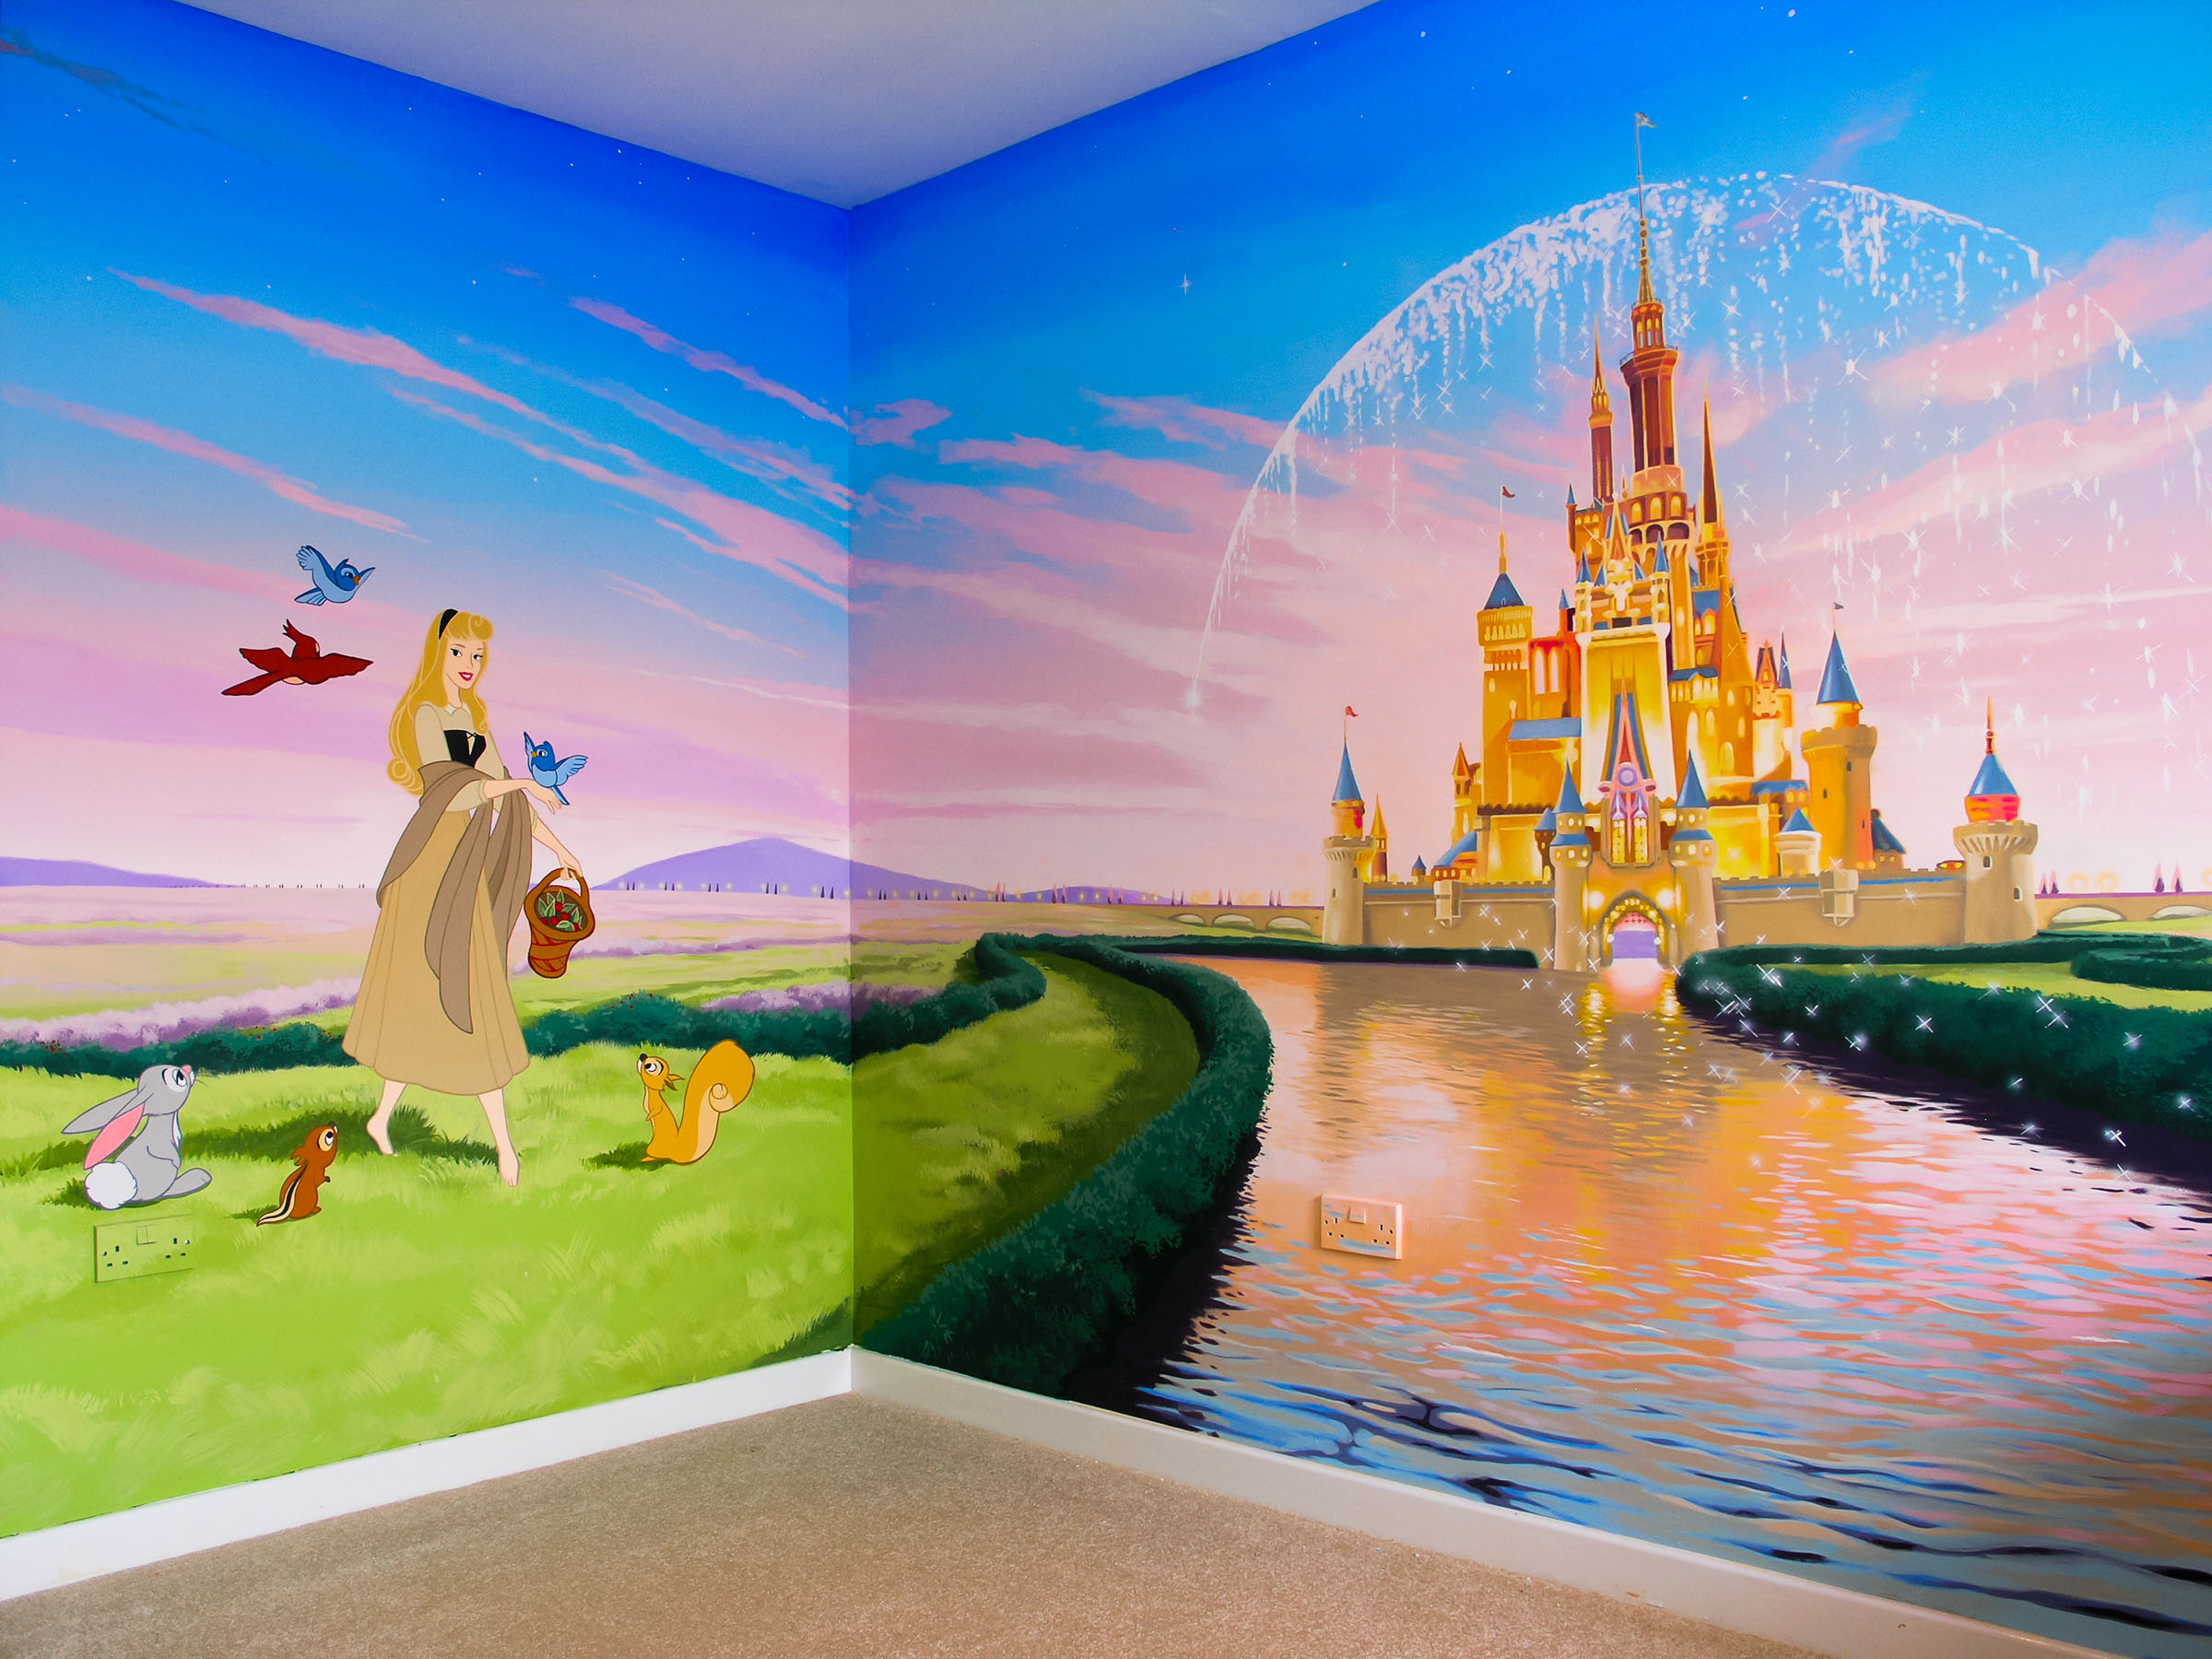 Disney castle wall mural